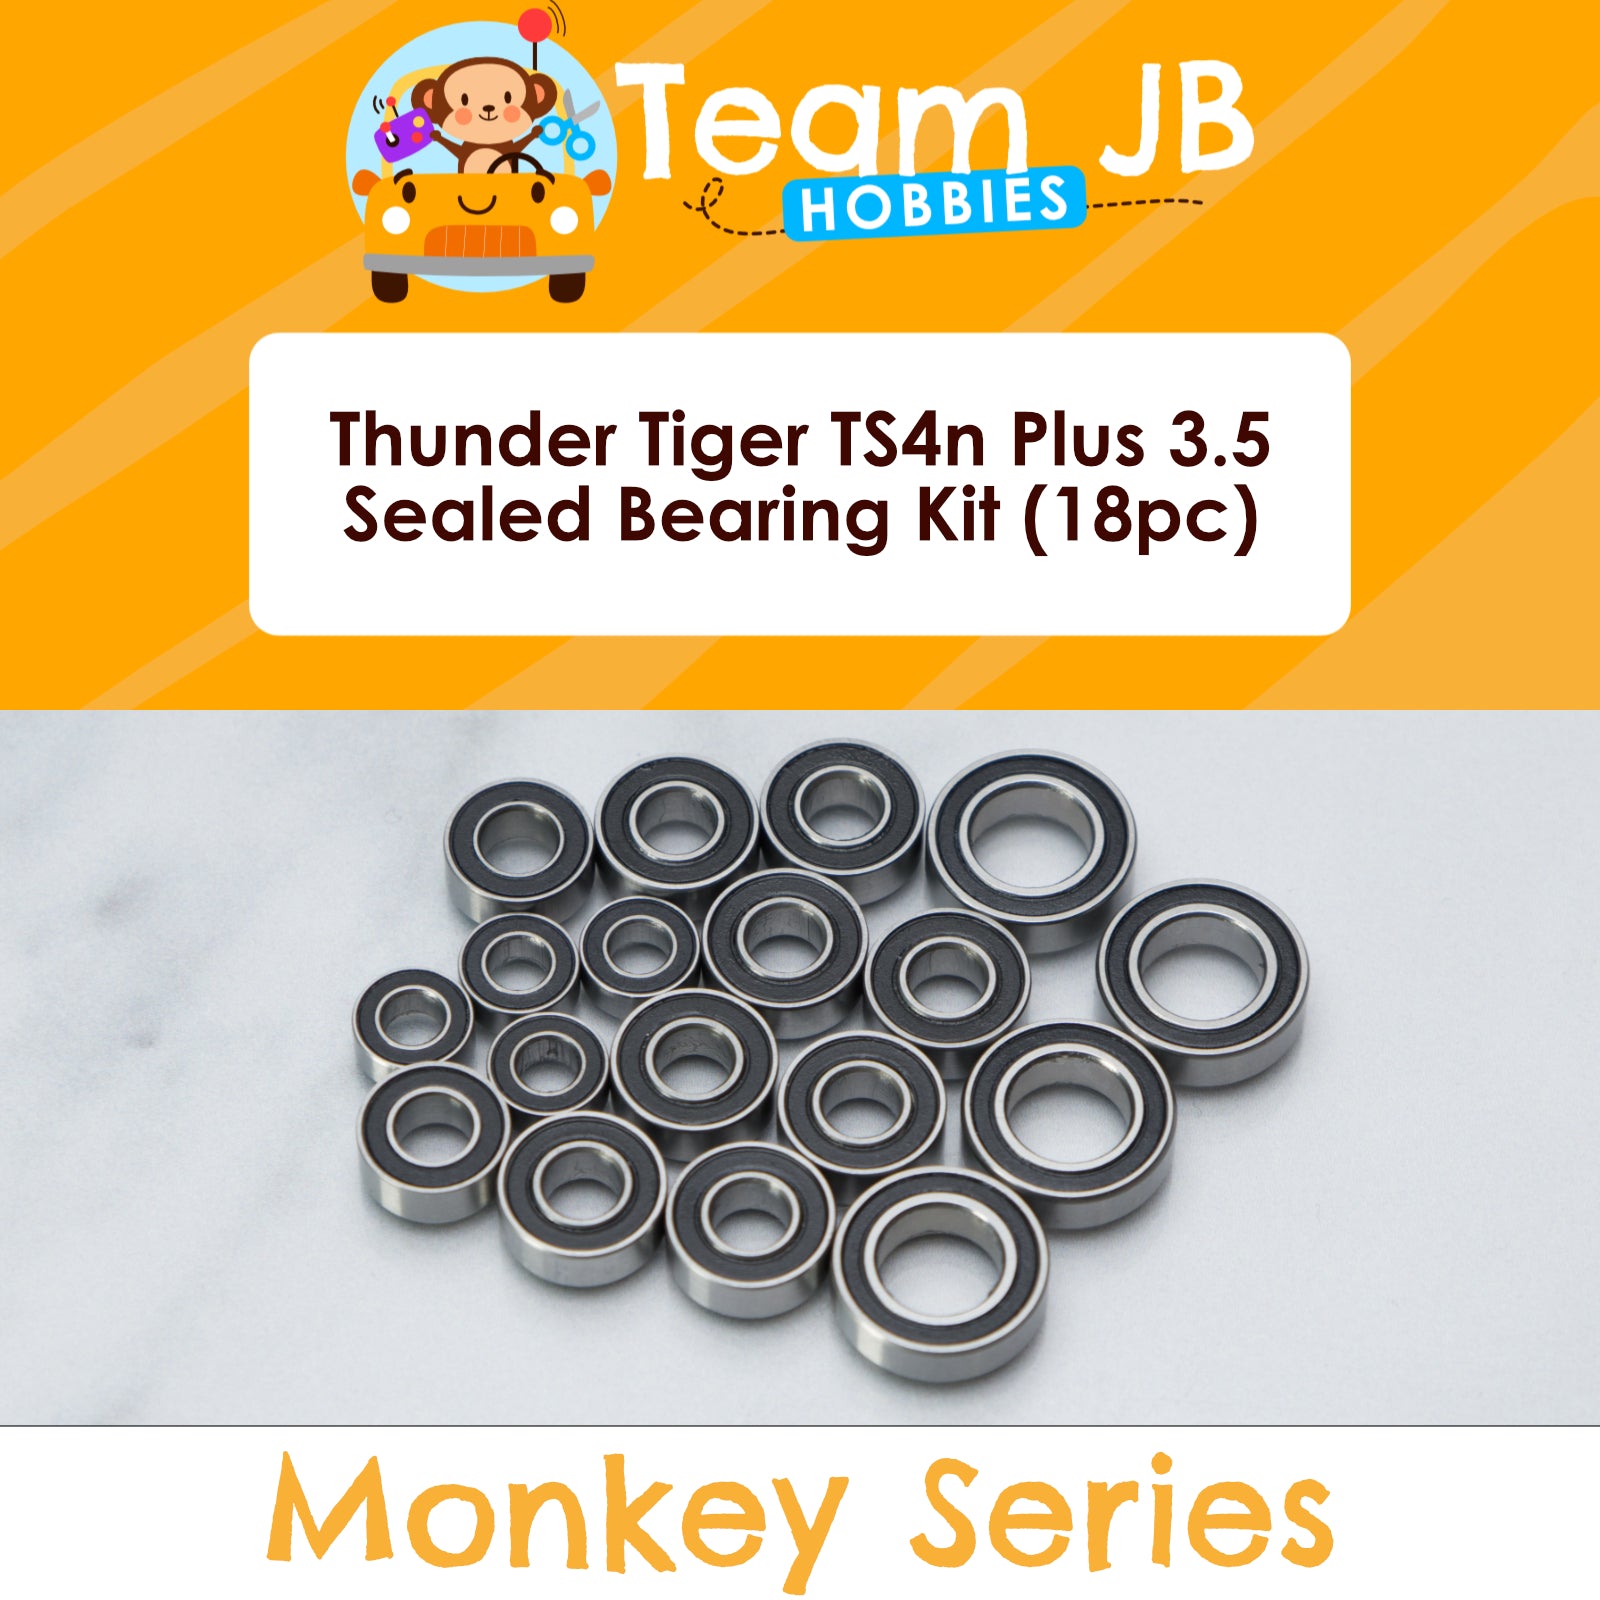 Thunder Tiger TS4n Plus 3.5 - Sealed Bearing Kit